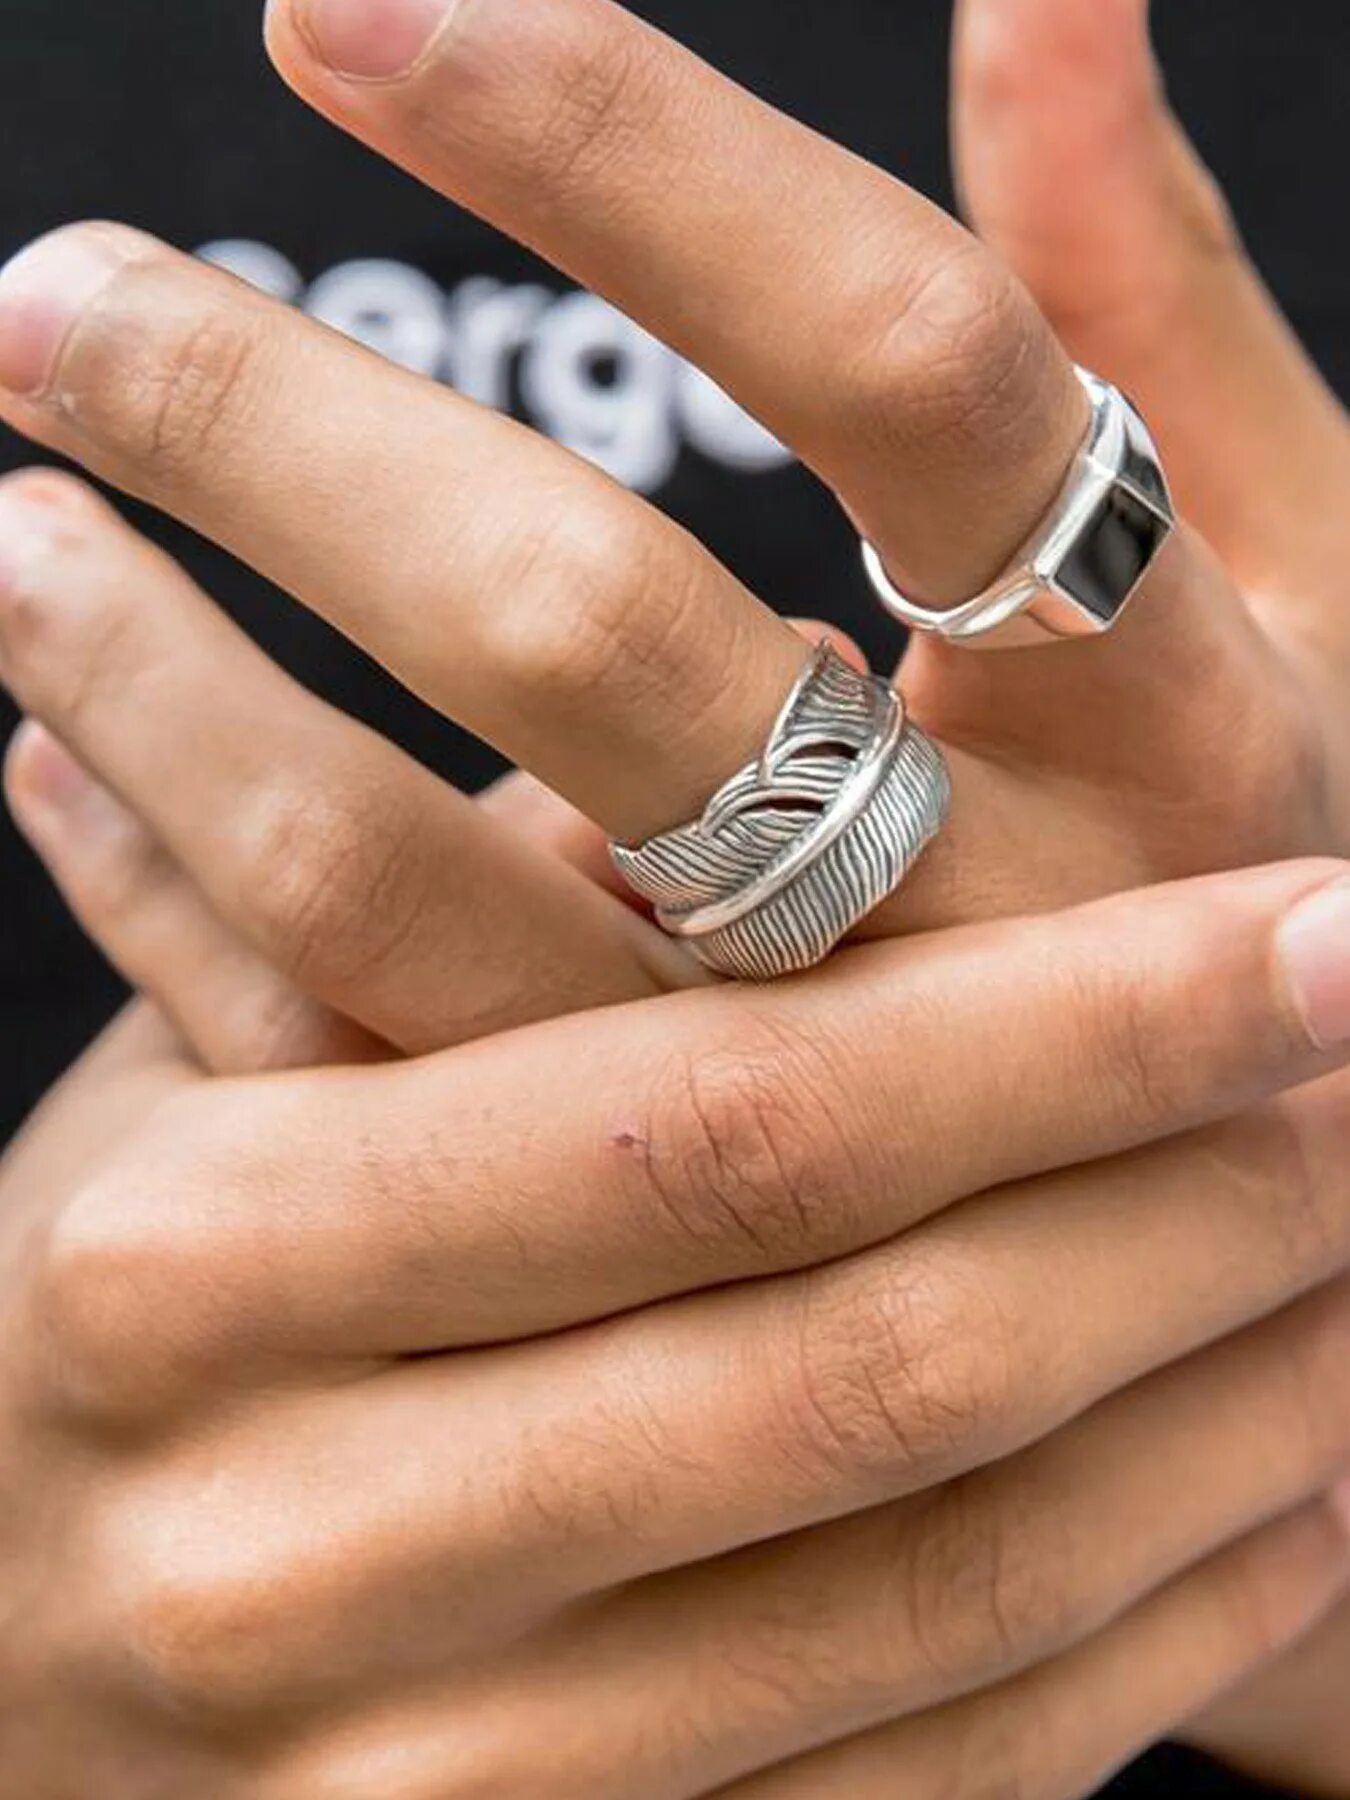 Мужские кольца значение. Кольцо на палец мужское. Мужское кольцо на указательный палец. Мужские кольца на руке. Широкое мужское кольцо.